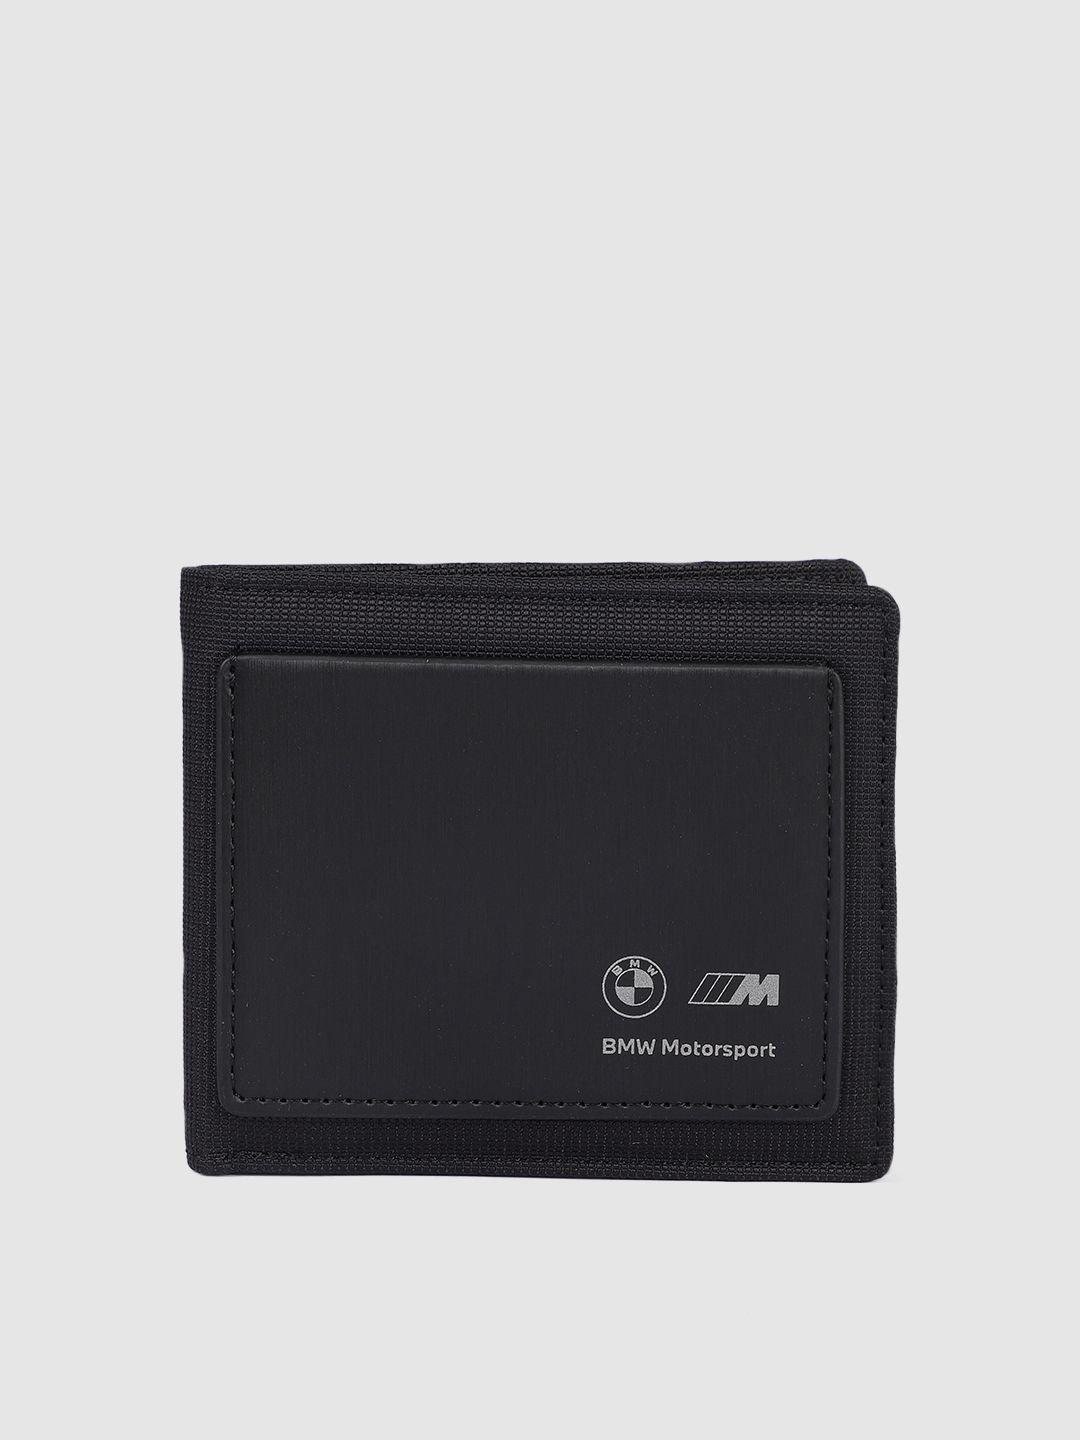 puma-motorsport-unisex-black-two-fold-wallet